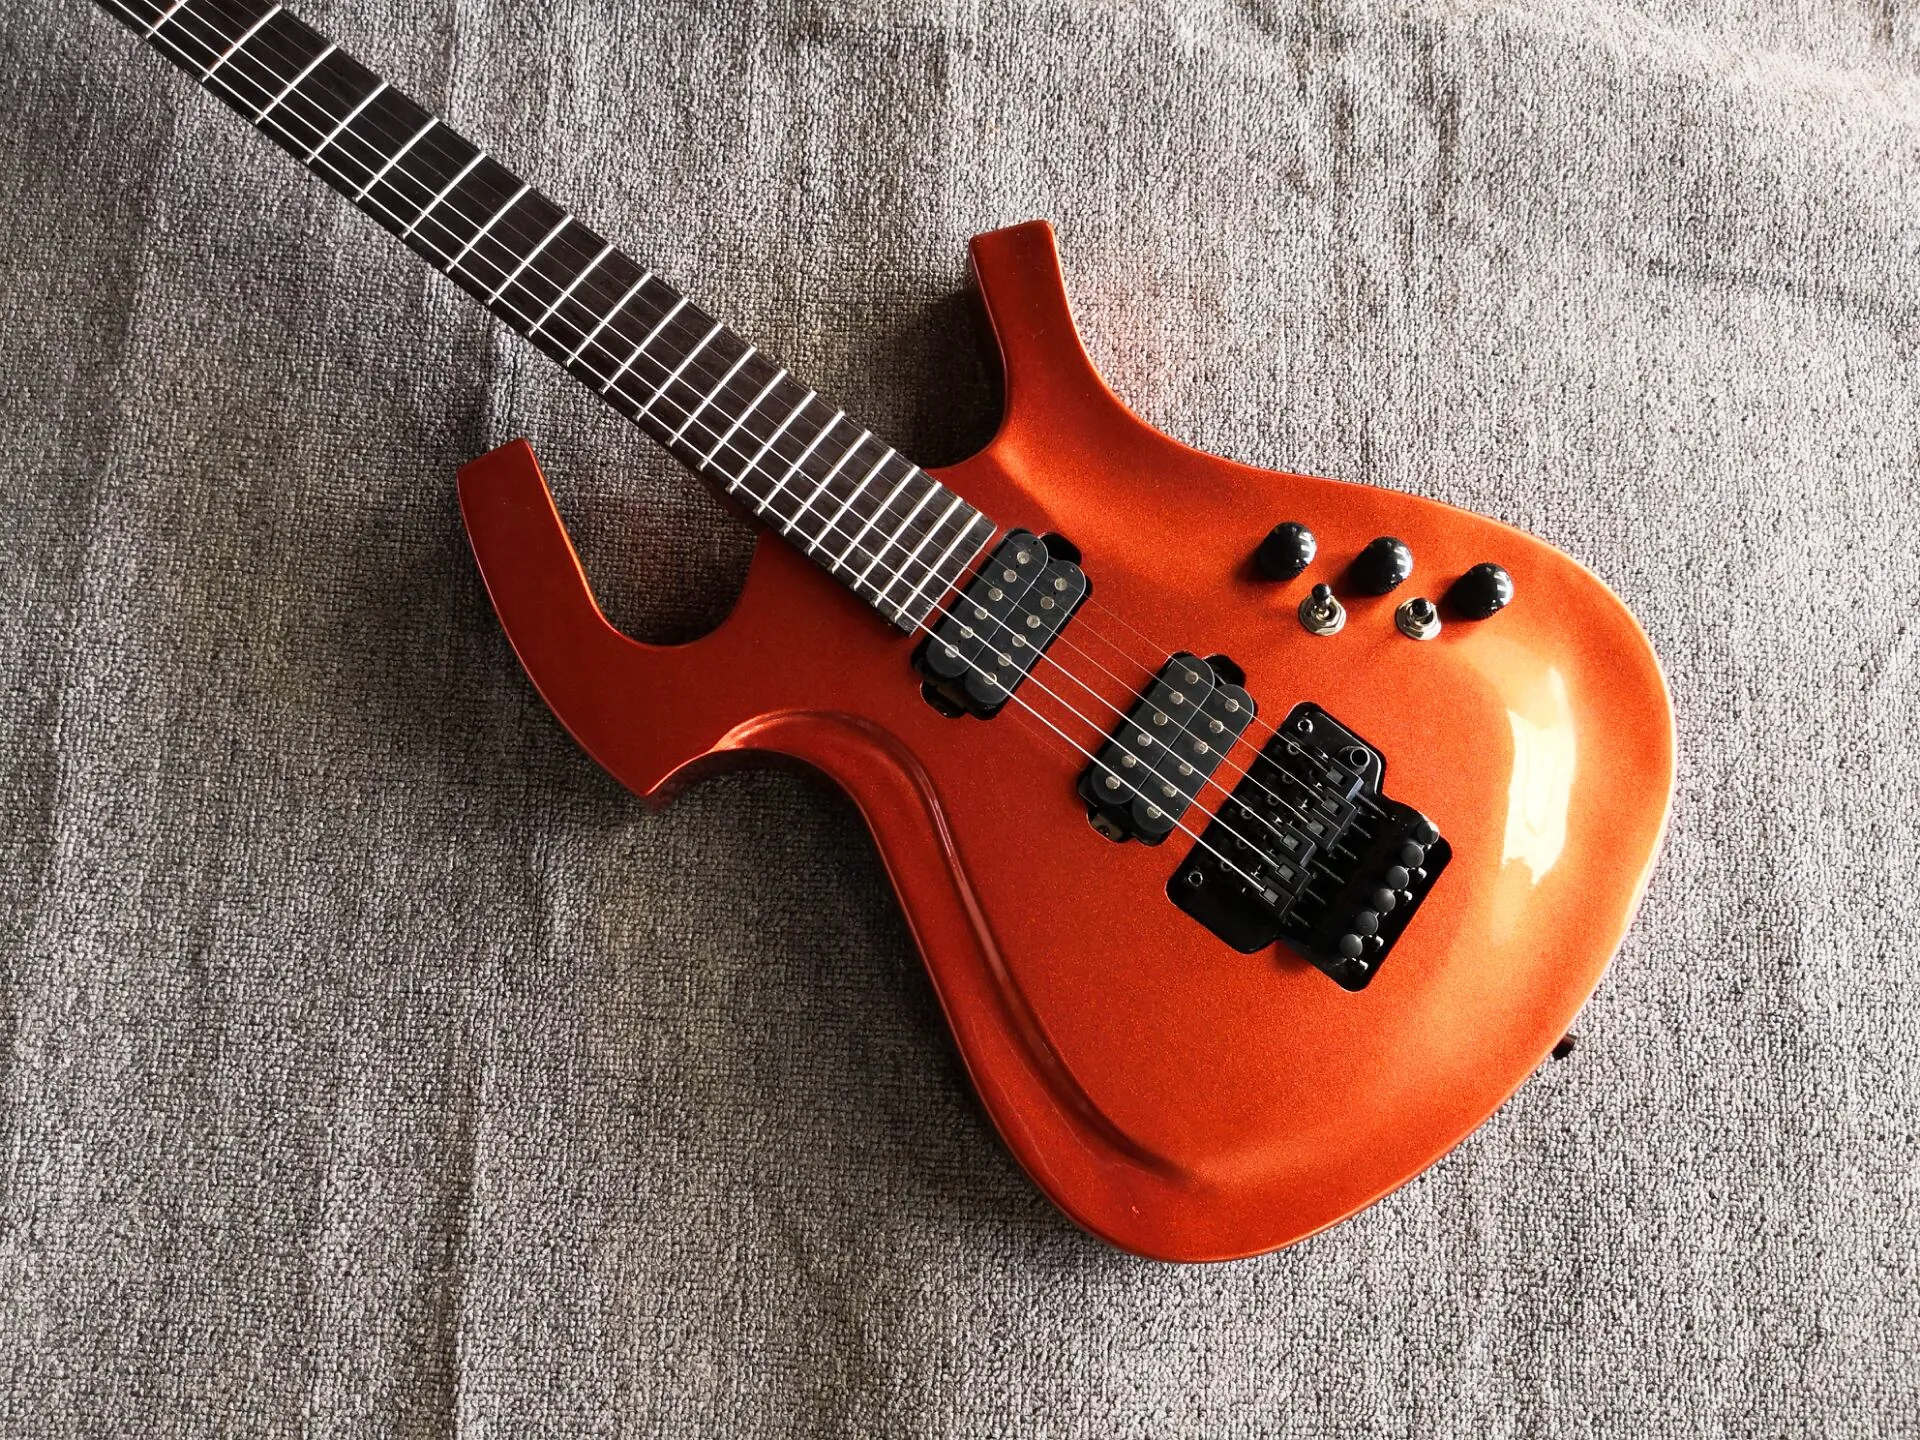 Custom Made Fly Mojo Chitarra elettrica trasparente rosso ciliegia doppia chitarra tremolo rosa Chitarra elettrica realizzata in Cina Spedizione gratuita